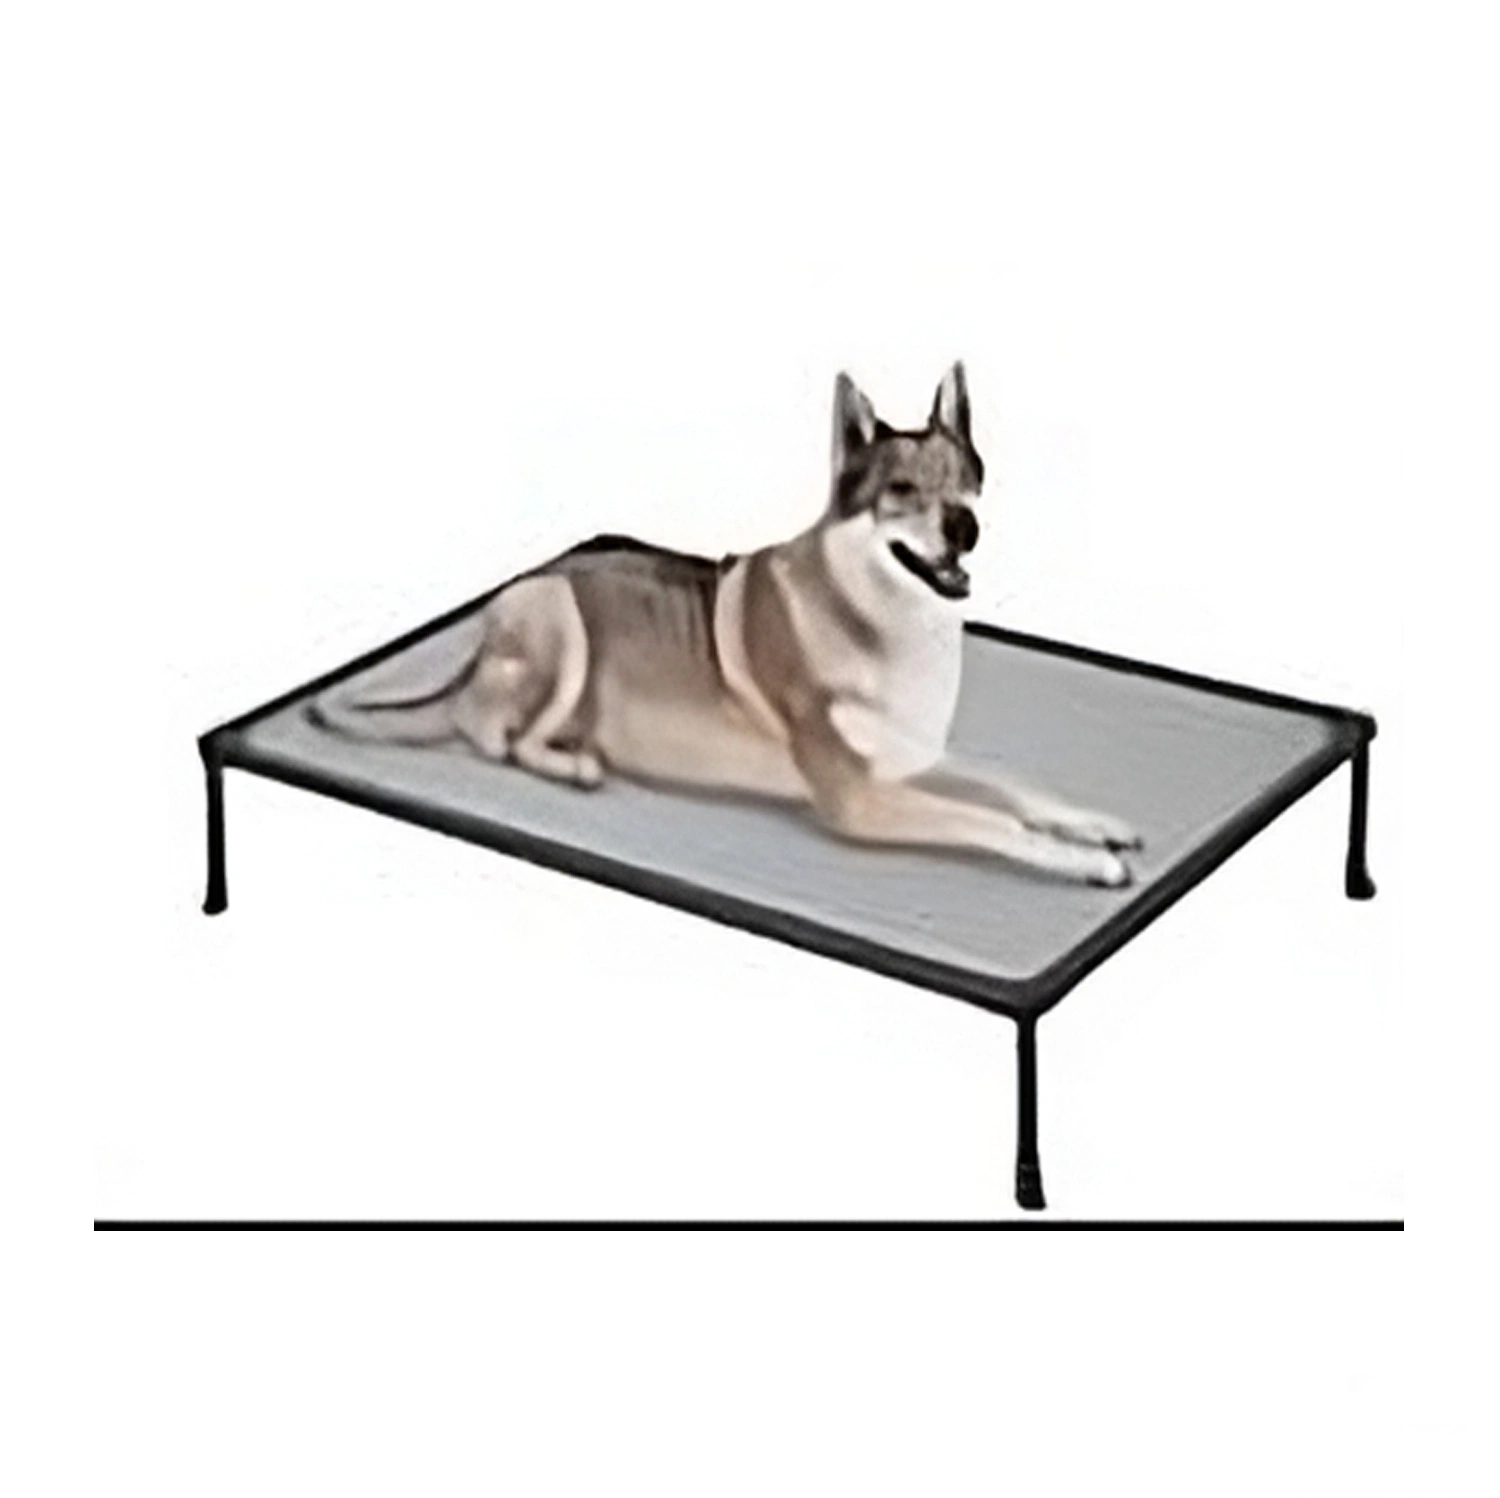 Venta caliente Hierro de lujo al aire libre estructura metálica elevada cama de perro